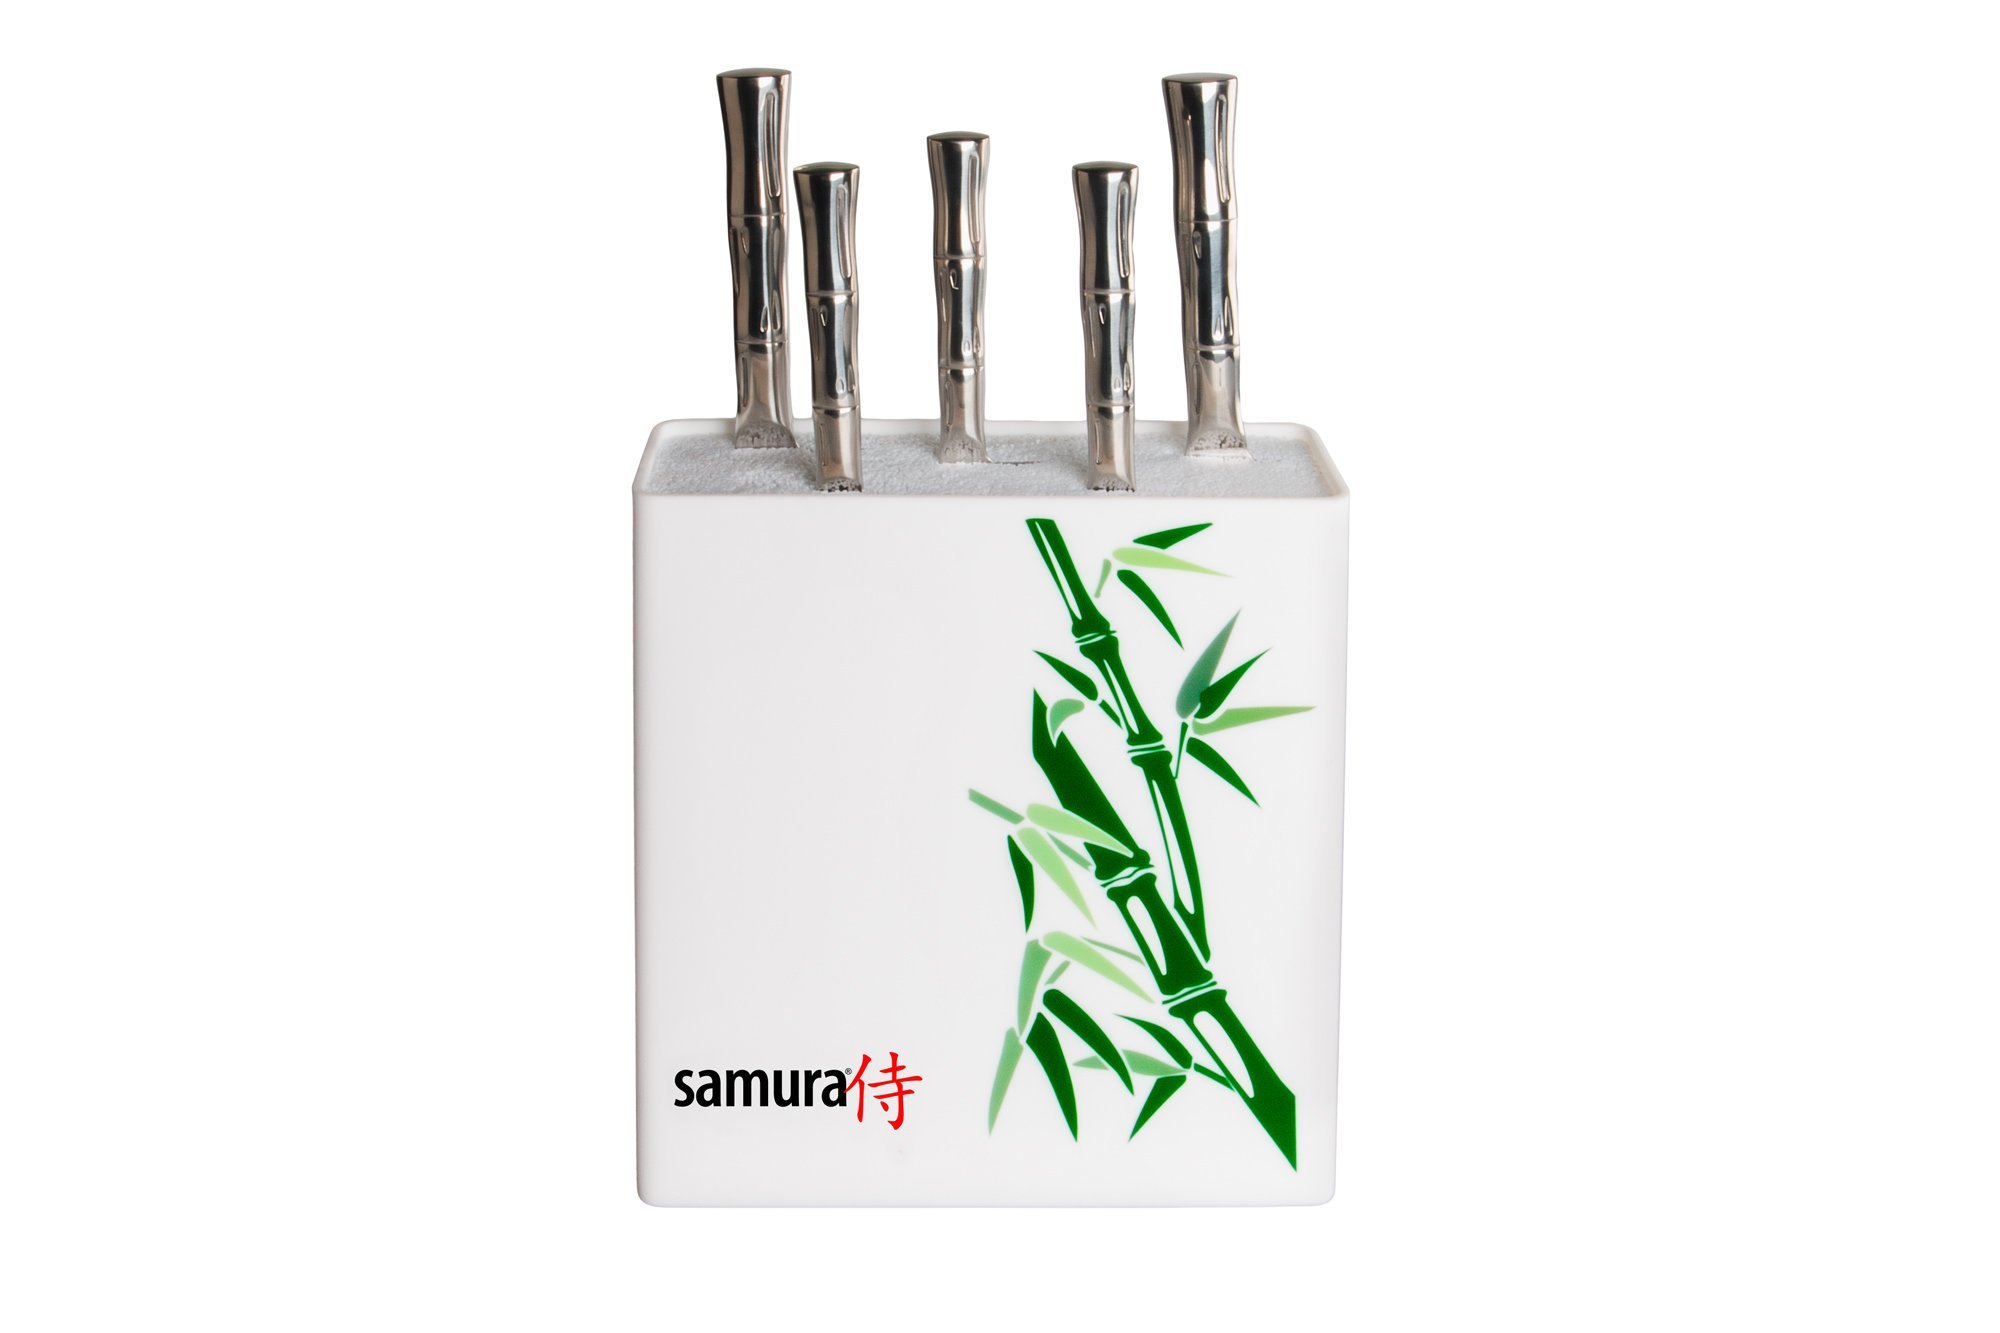 фото Подставка универсальная для ножей "samura",230x225x82мм, пластик (белая, зеленый бамбук)